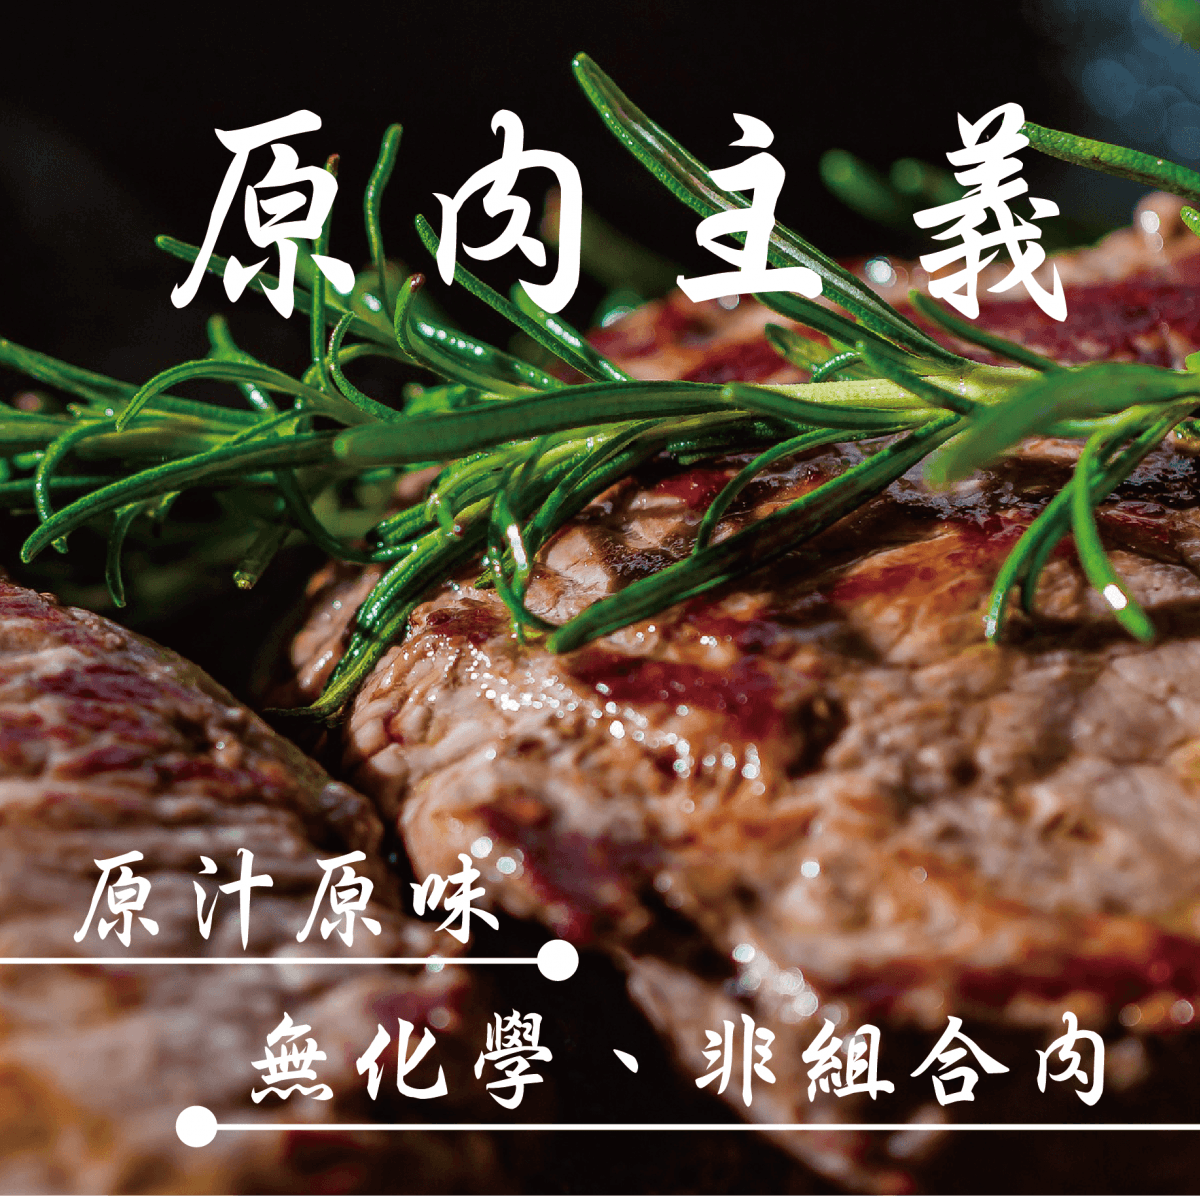 【田食原】 鮮嫩菲力牛排300g (3片/100g)厚切 低脂牛肉 天然無添加 減醣健身必備 4